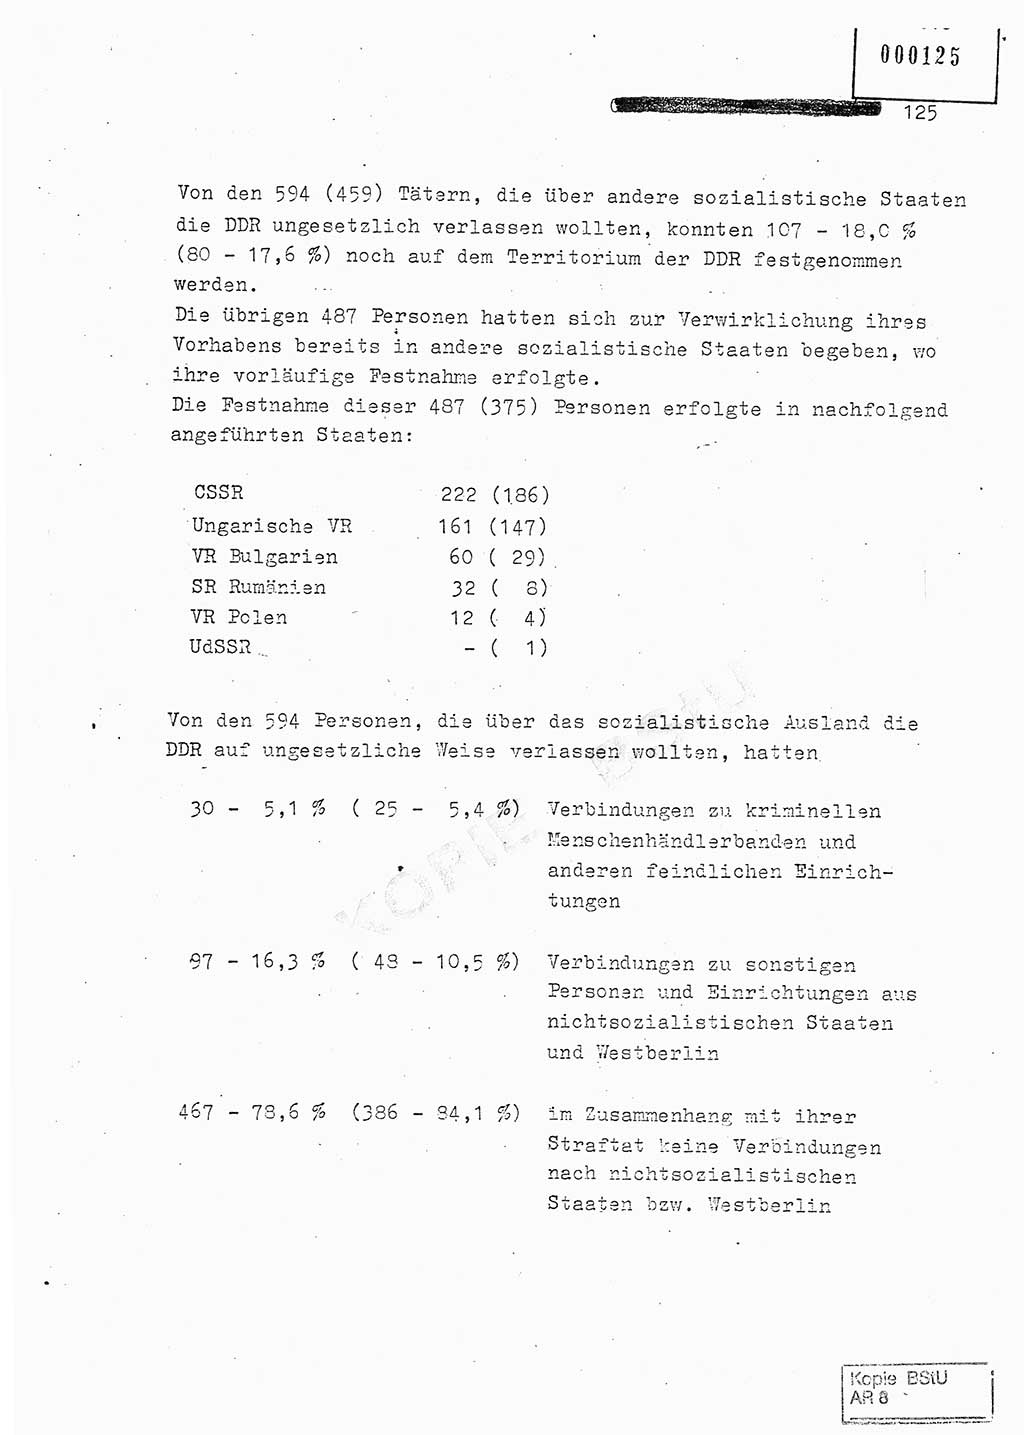 Jahresbericht der Hauptabteilung (HA) Ⅸ 1980, Analyse über die Entwicklung und die Wirksamkeit der politisch-operativen Arbeit der Linie Ⅸ in der Zeit vom 1. Januar 1980 bis 30. September 1980, Ministerium für Staatssicherheit (MfS) der Deutschen Demokratischen Republik (DDR), Hauptabteilung Ⅸ, Geheime Verschlußsache (GVS) 014-660/80, Berlin 1980, Seite 125 (Anal. MfS DDR HA Ⅸ GVS 014-660/80 1980, S. 125)